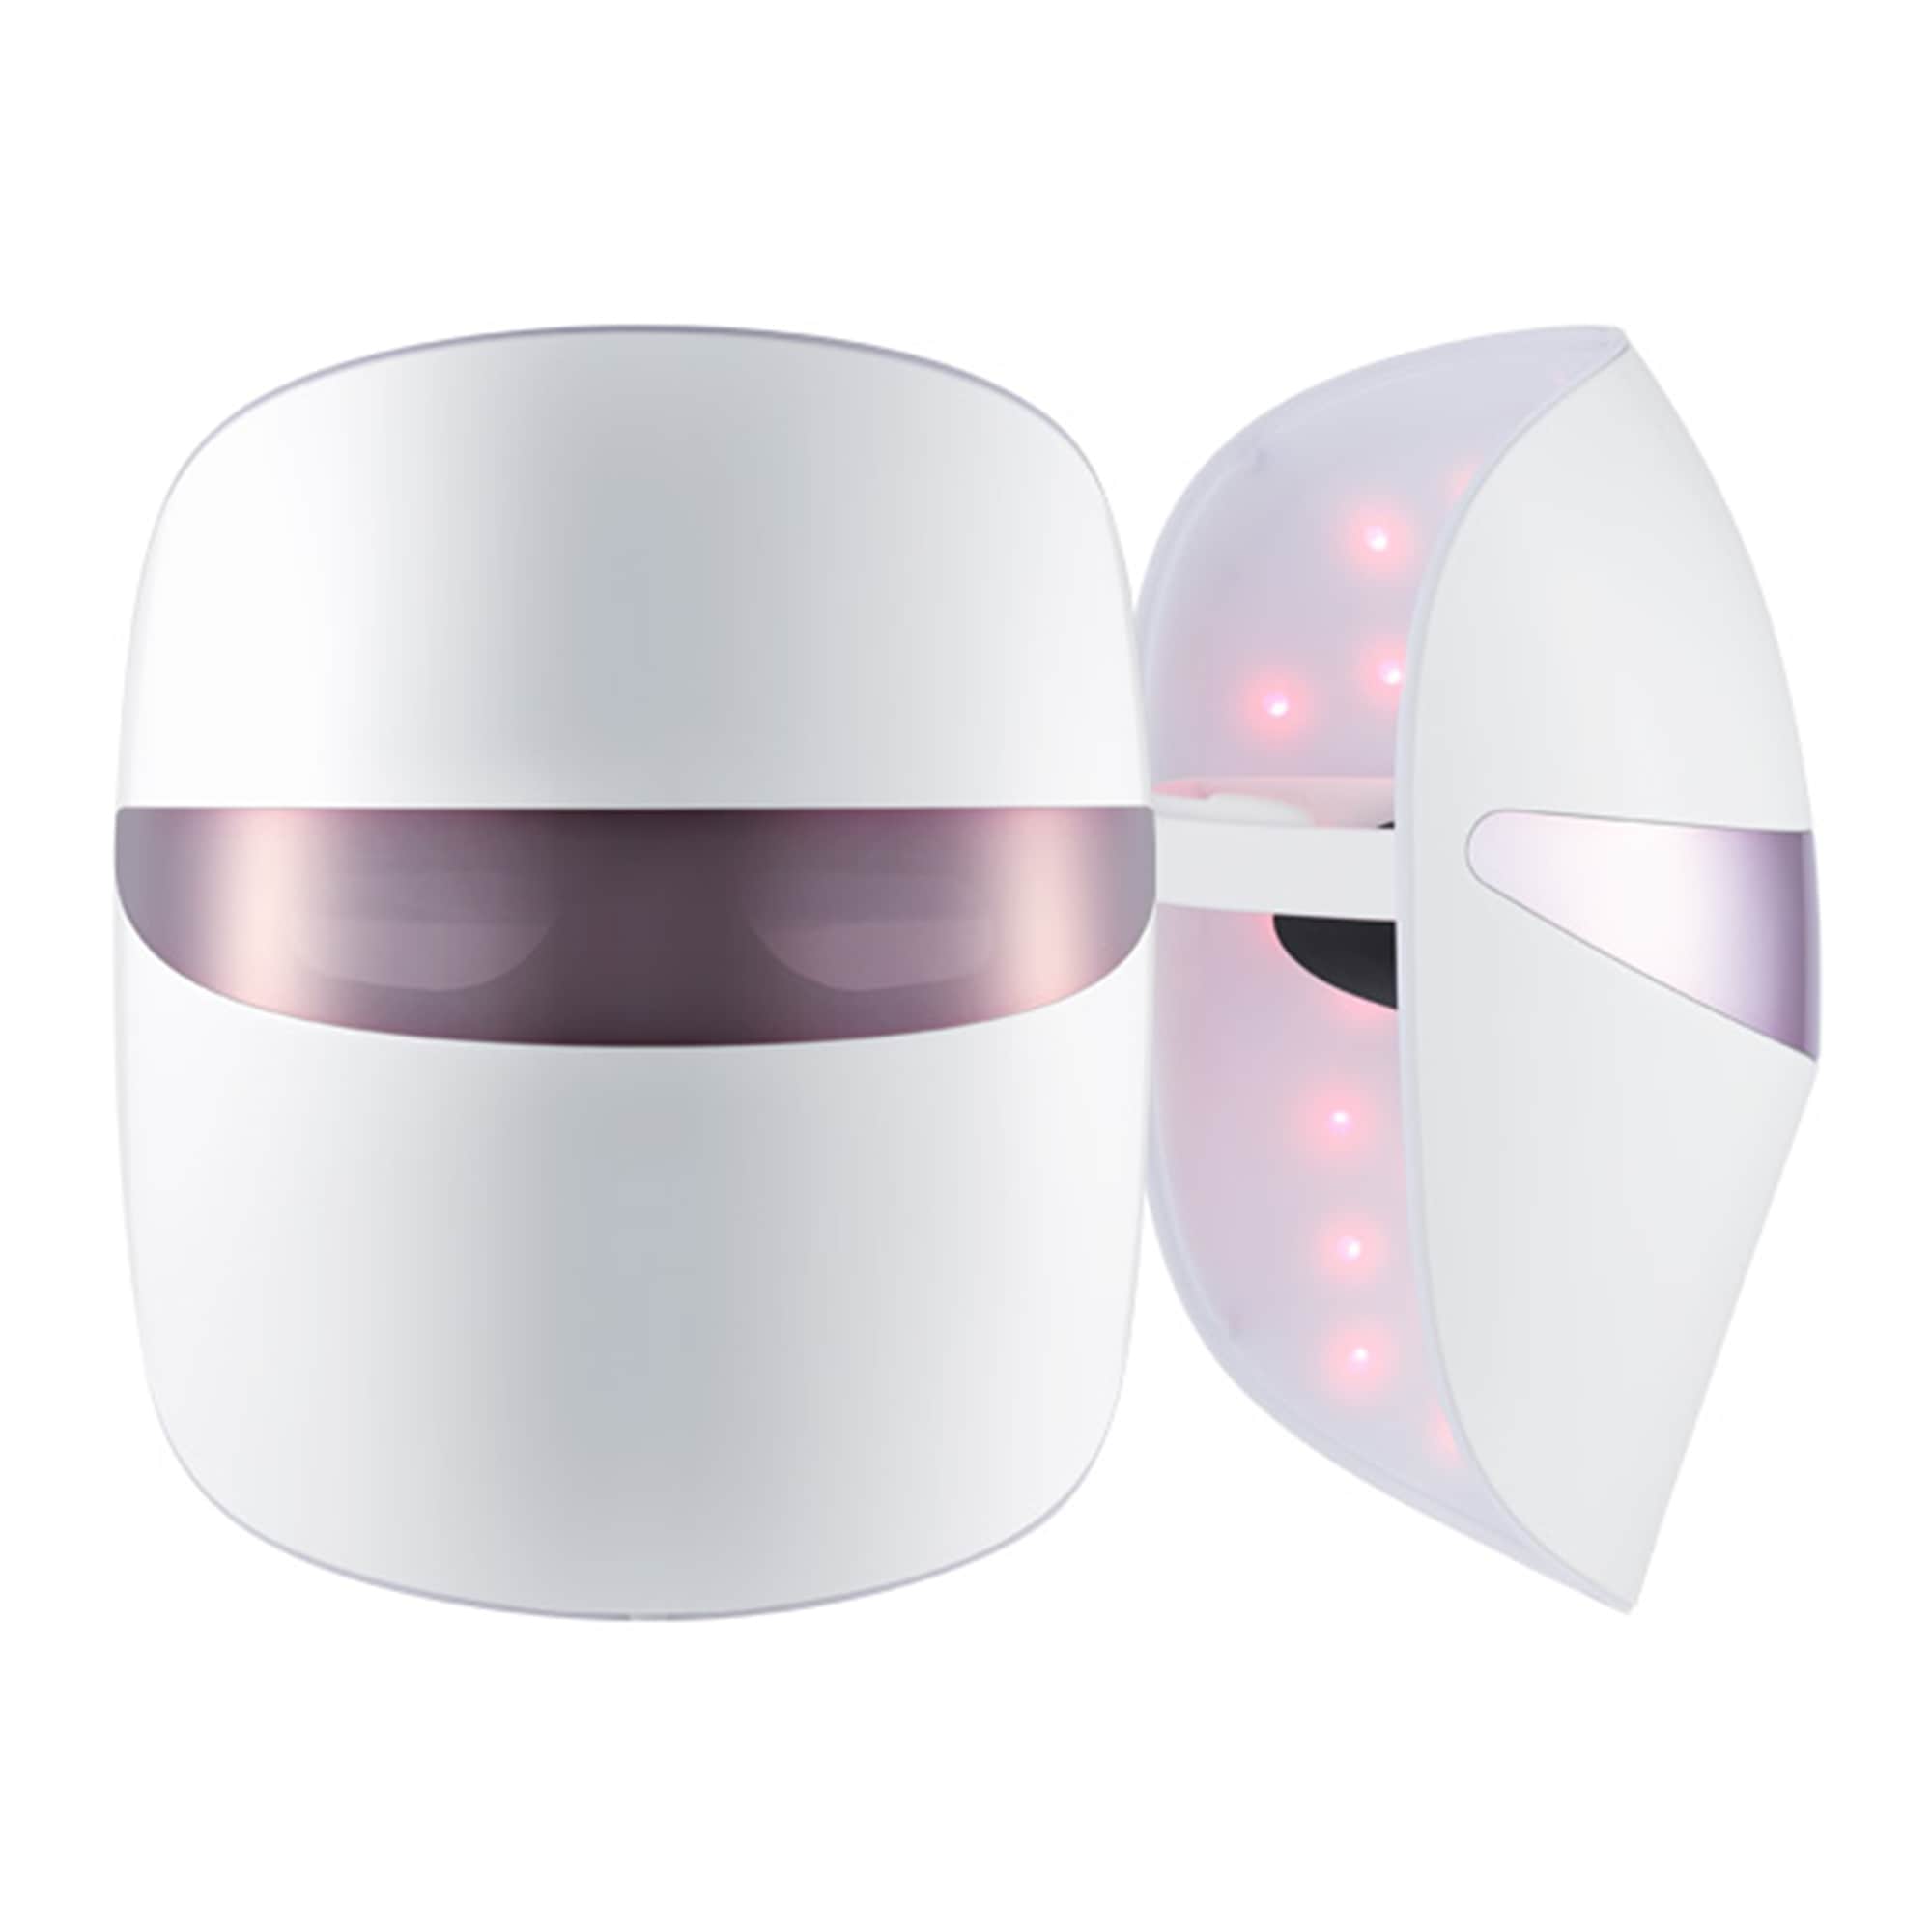 뷰티 디바이스 더마 LED 마스크 (BWJ1.AKOR) 줌이미지 0